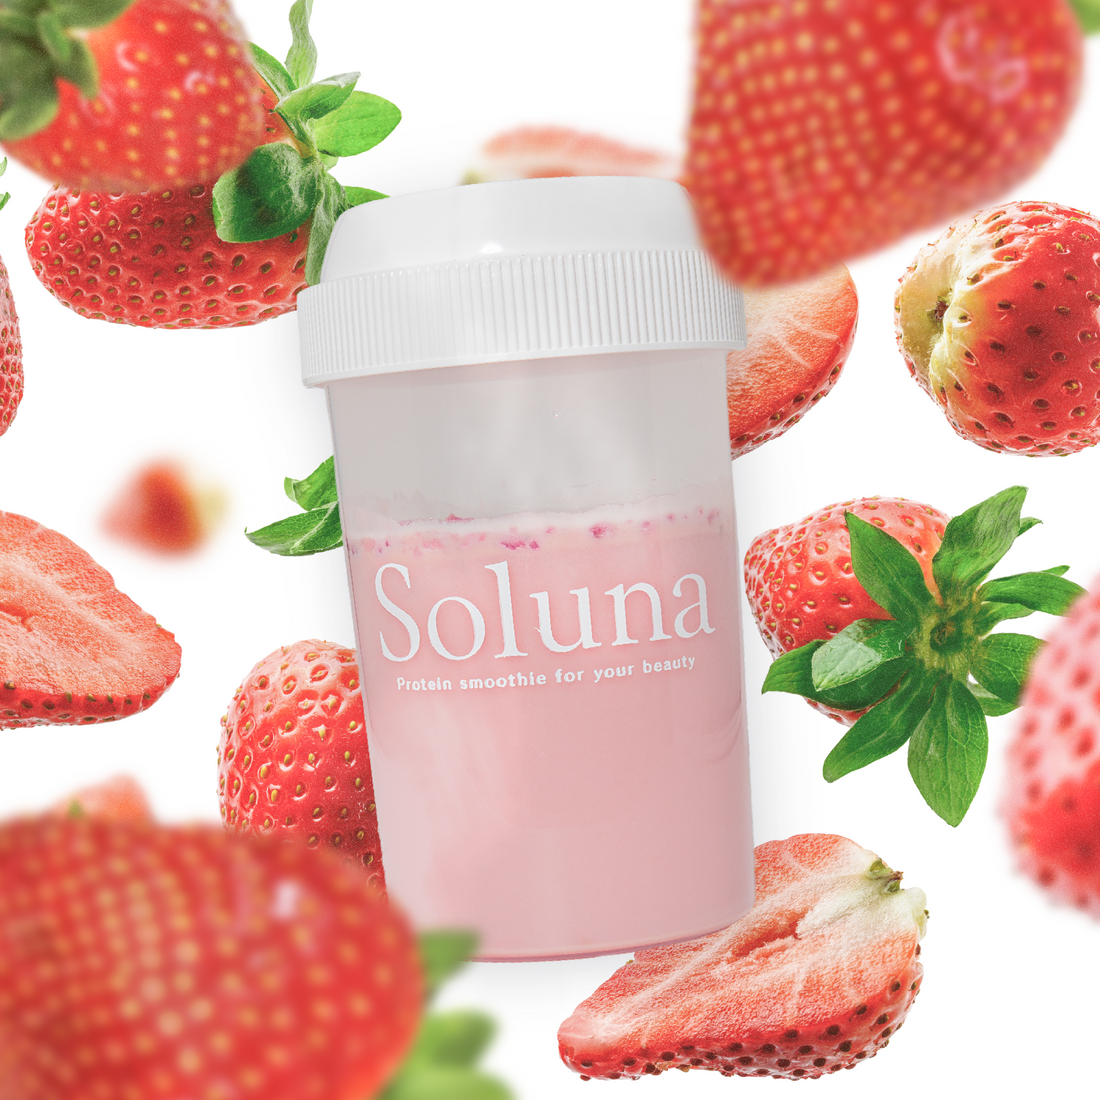 国内初、果実粉砕入り美容プロテイン  【SOLUNA -ソルーナ -】を販売開始  ー1食あたりビタミンC400mg配合の栄養機能食品ー